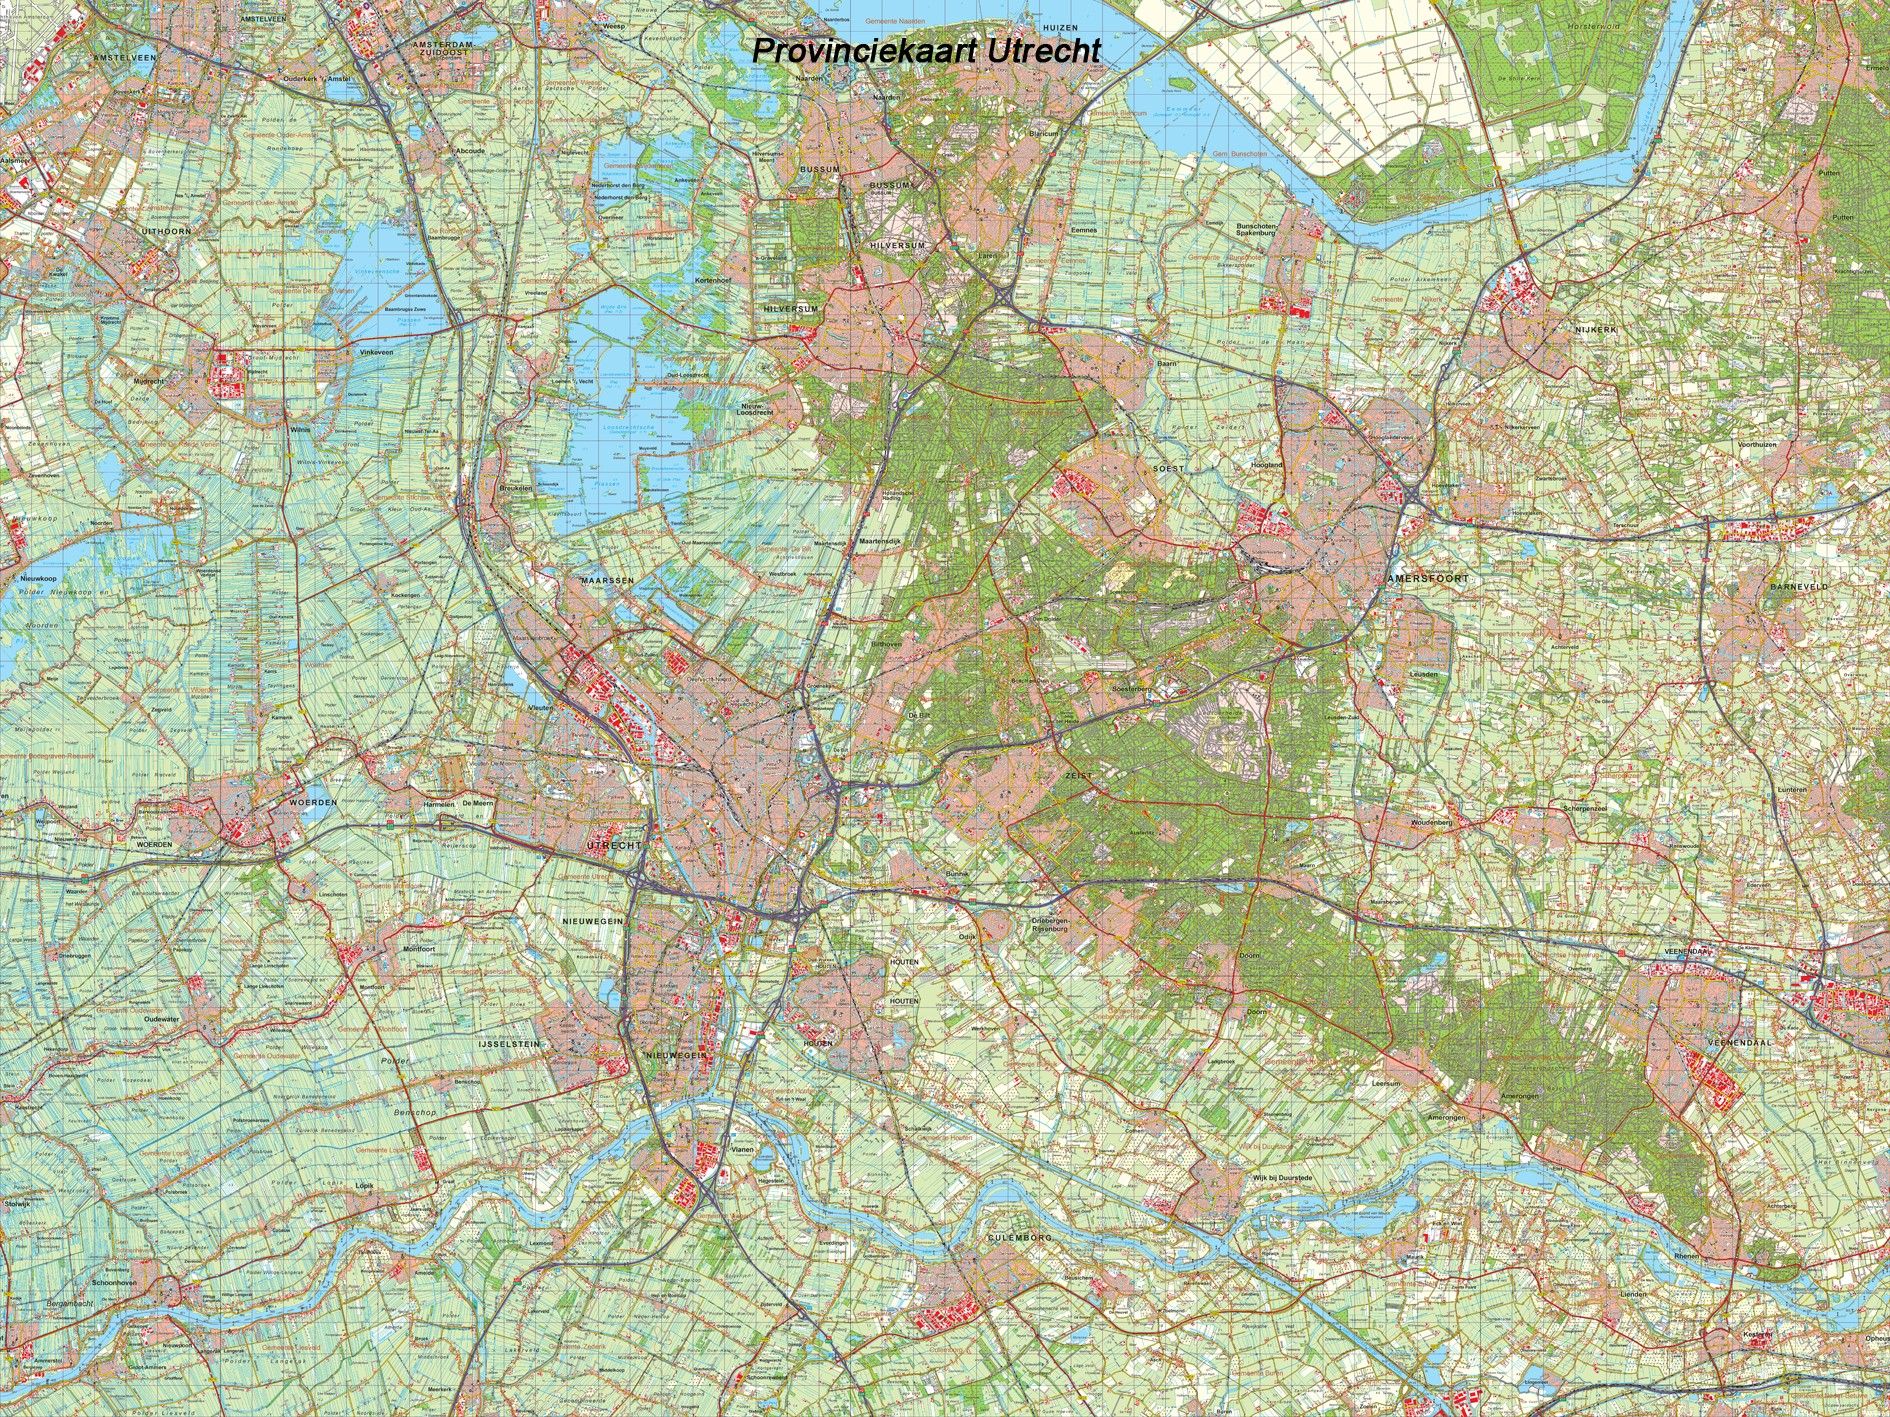 Provincie kaart Utrecht schaal 1:50.000